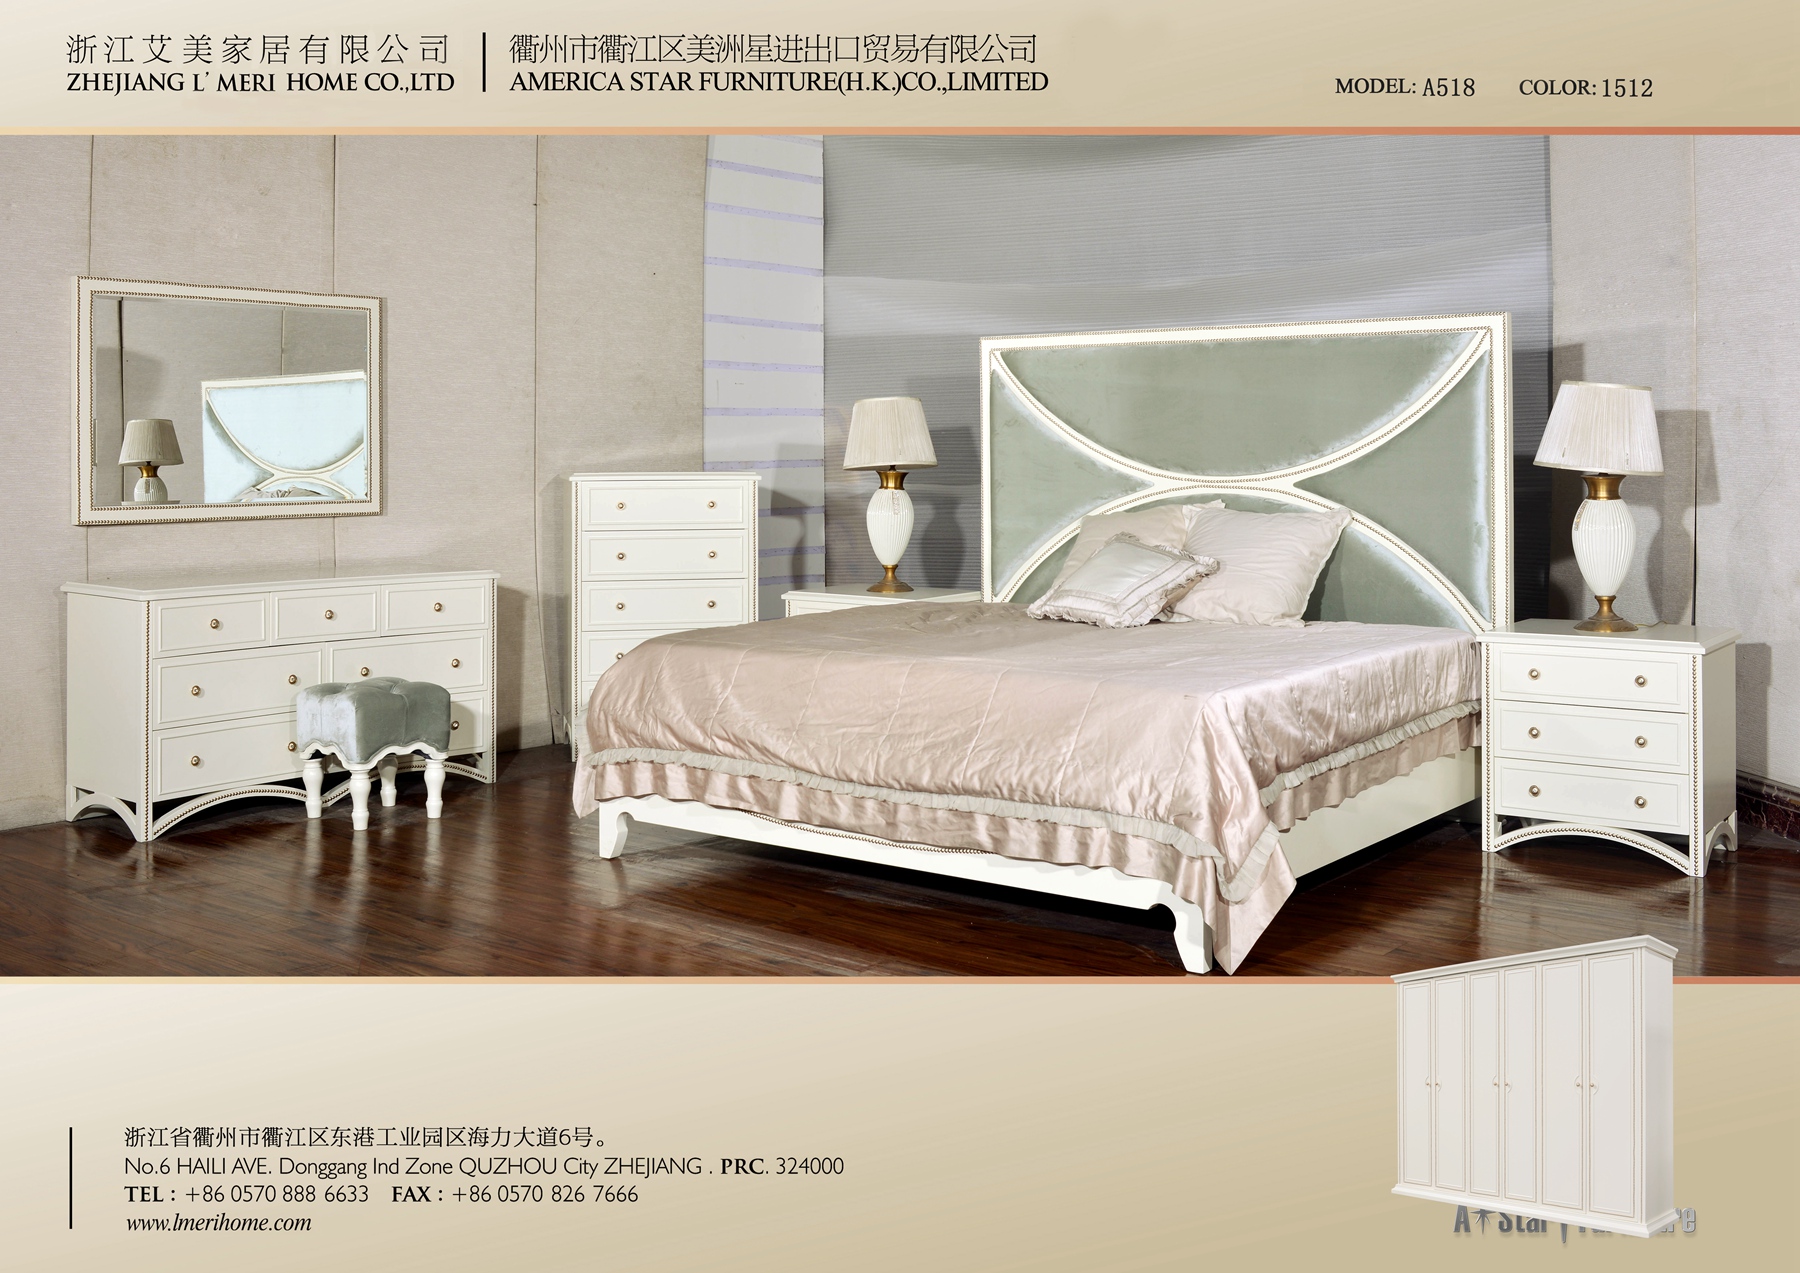 bedroom - Model no.:A518